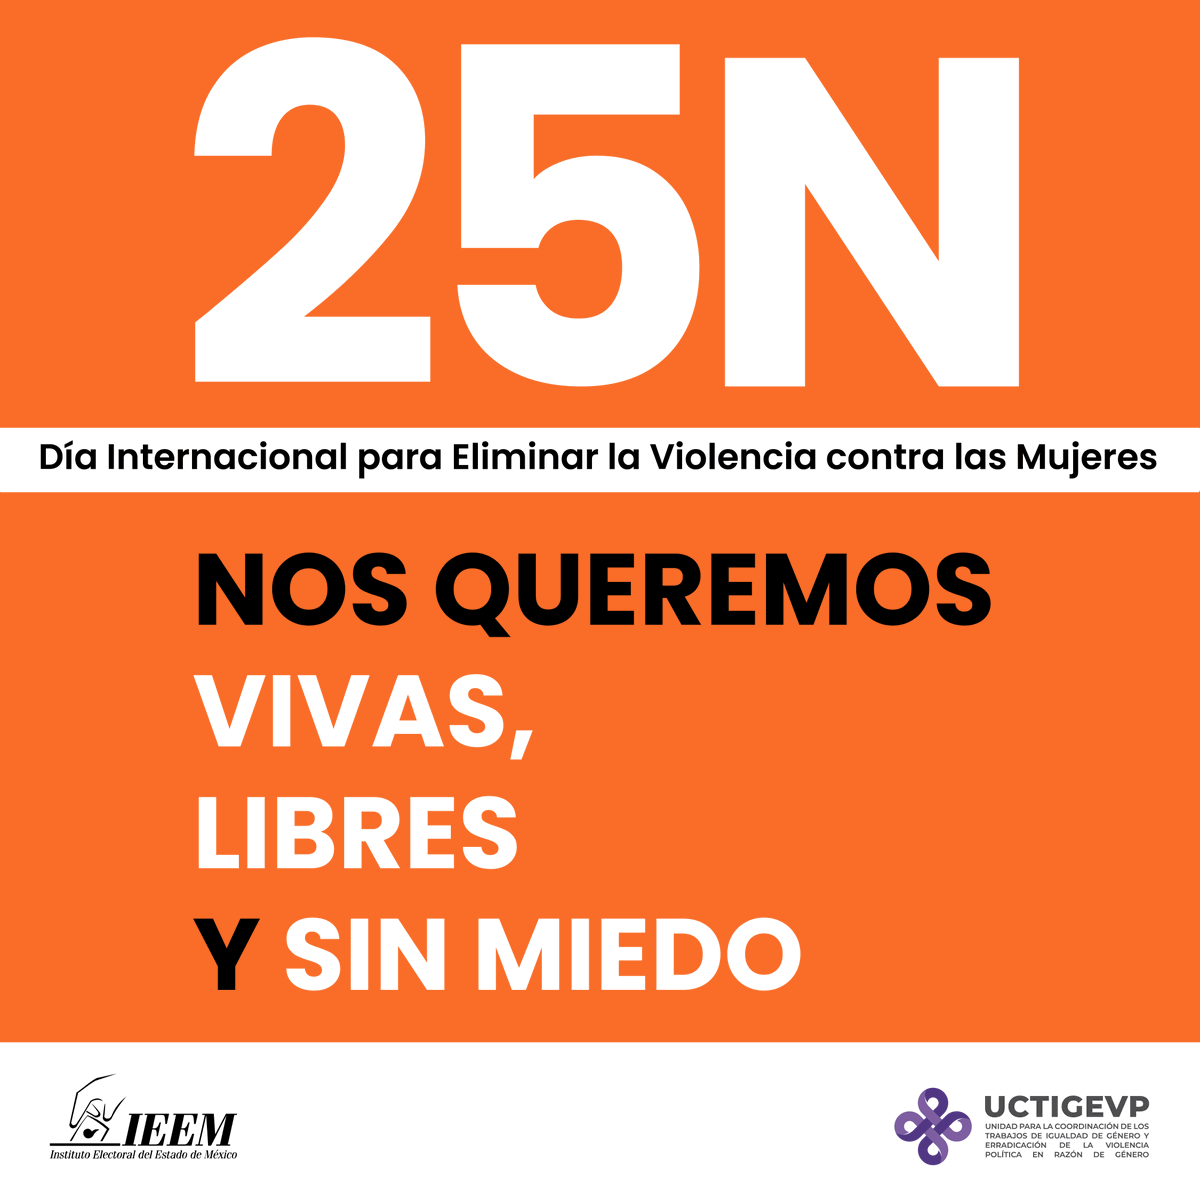 Hoy 25 de noviembre, se conmemora el Día Internacional para Eliminar la Violencia contra las Mujeres. ¡Digamos NO a la violencia y hagamos un mundo más seguro para todas! #25N #DíaNaranja 🧡